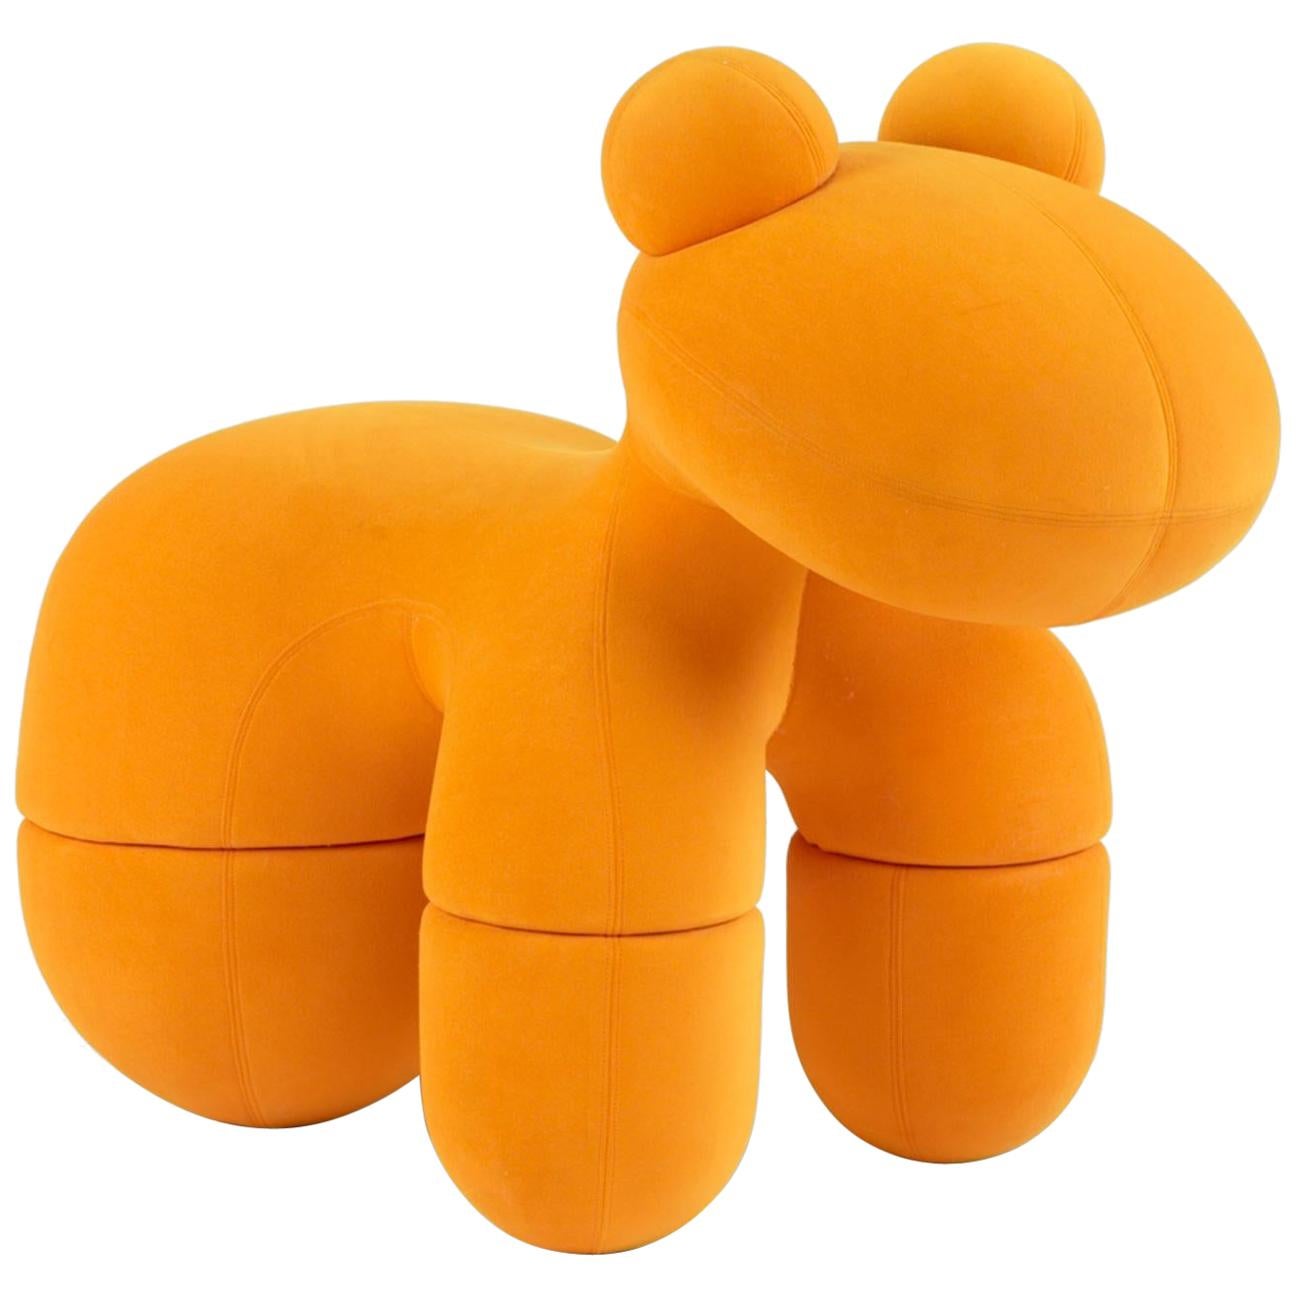 Poney orange emblématique Eero Aarnio